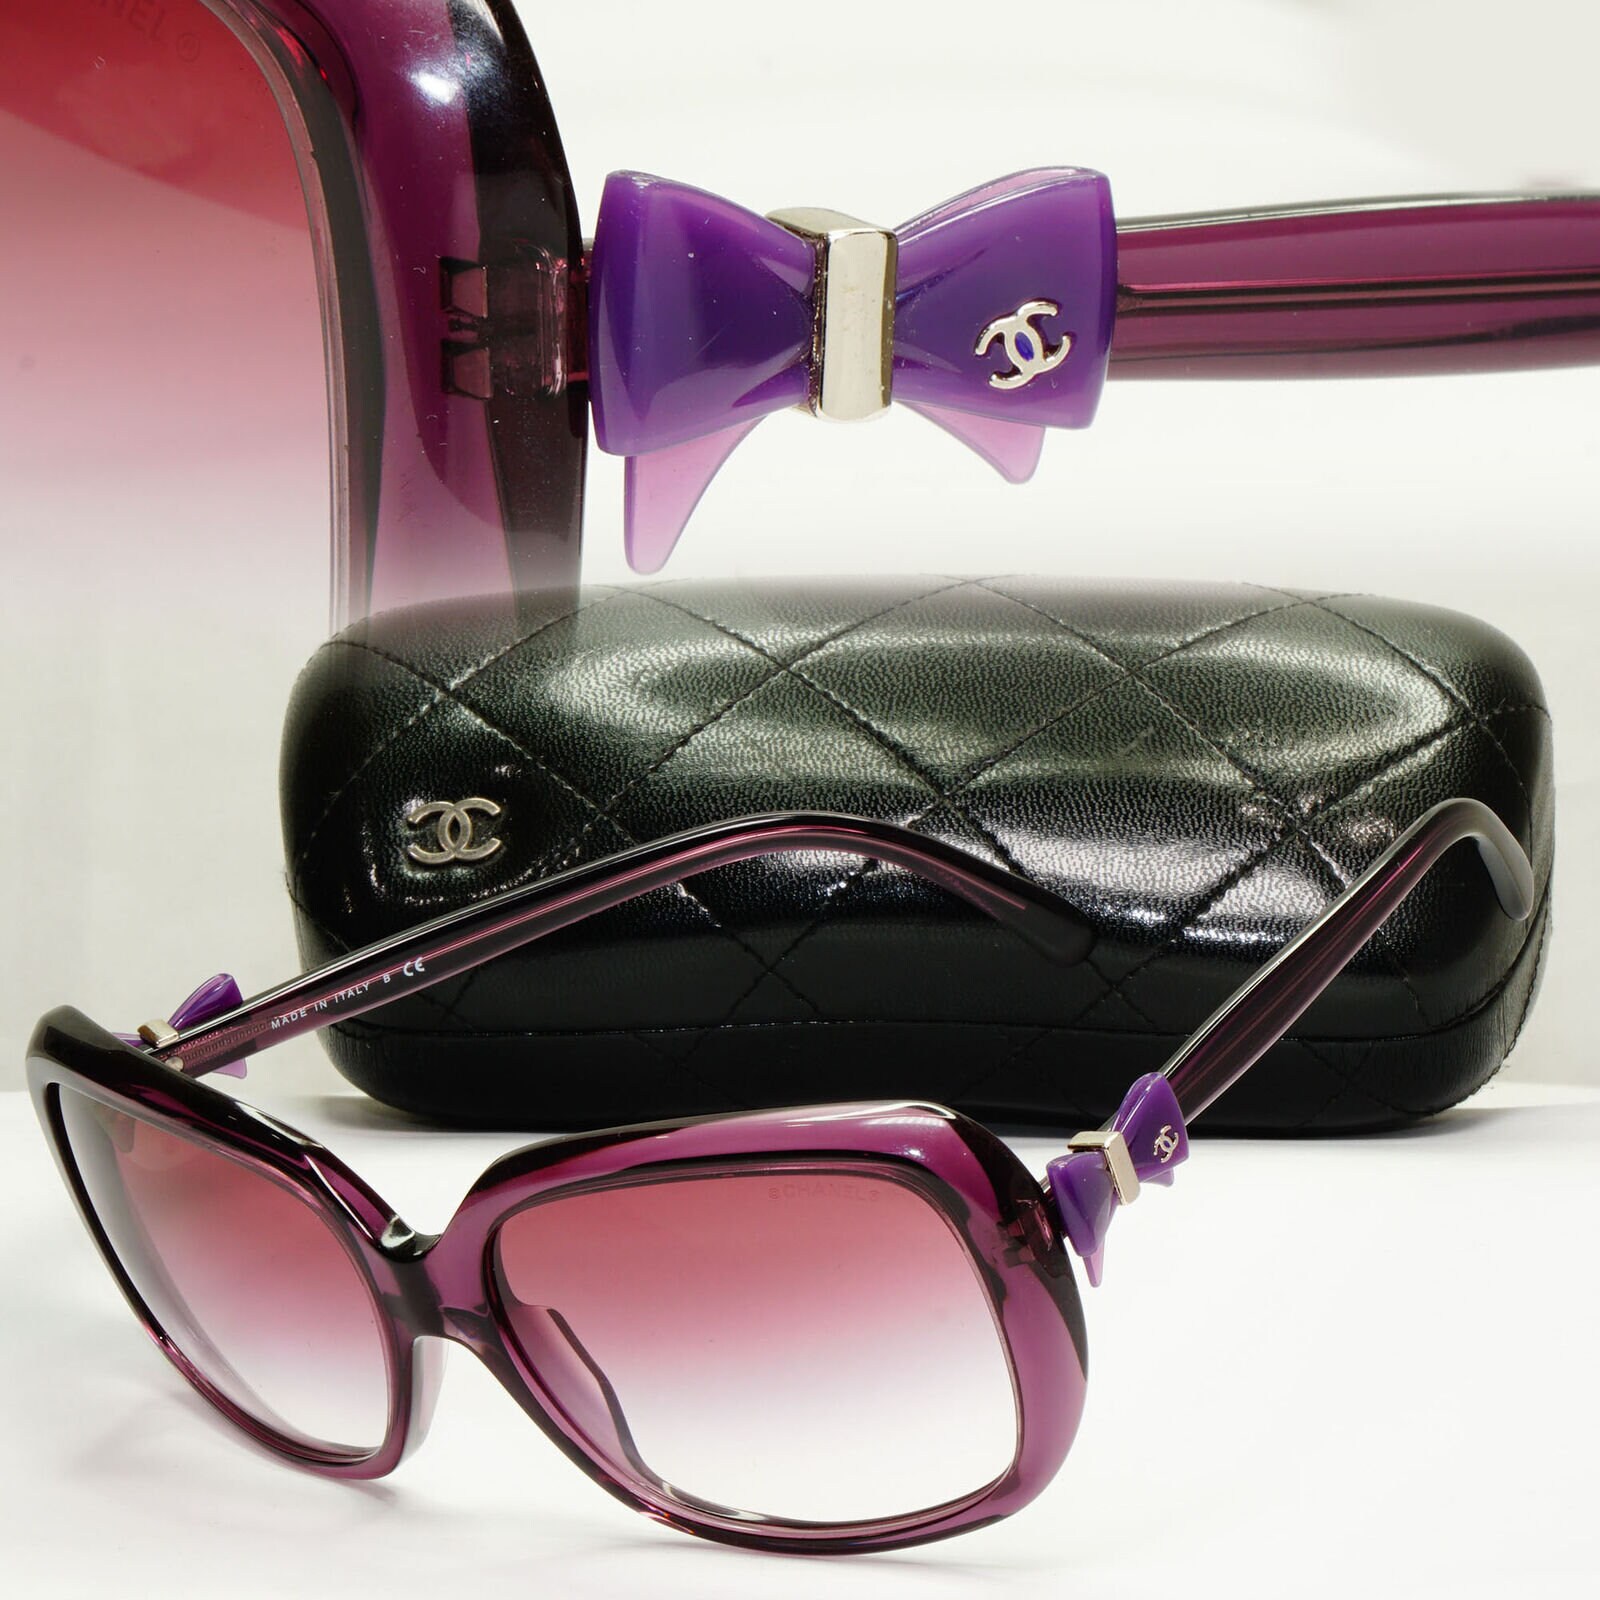 Chanel 2013 Bow Sunglasses Purple Violet Square Gradient 5171